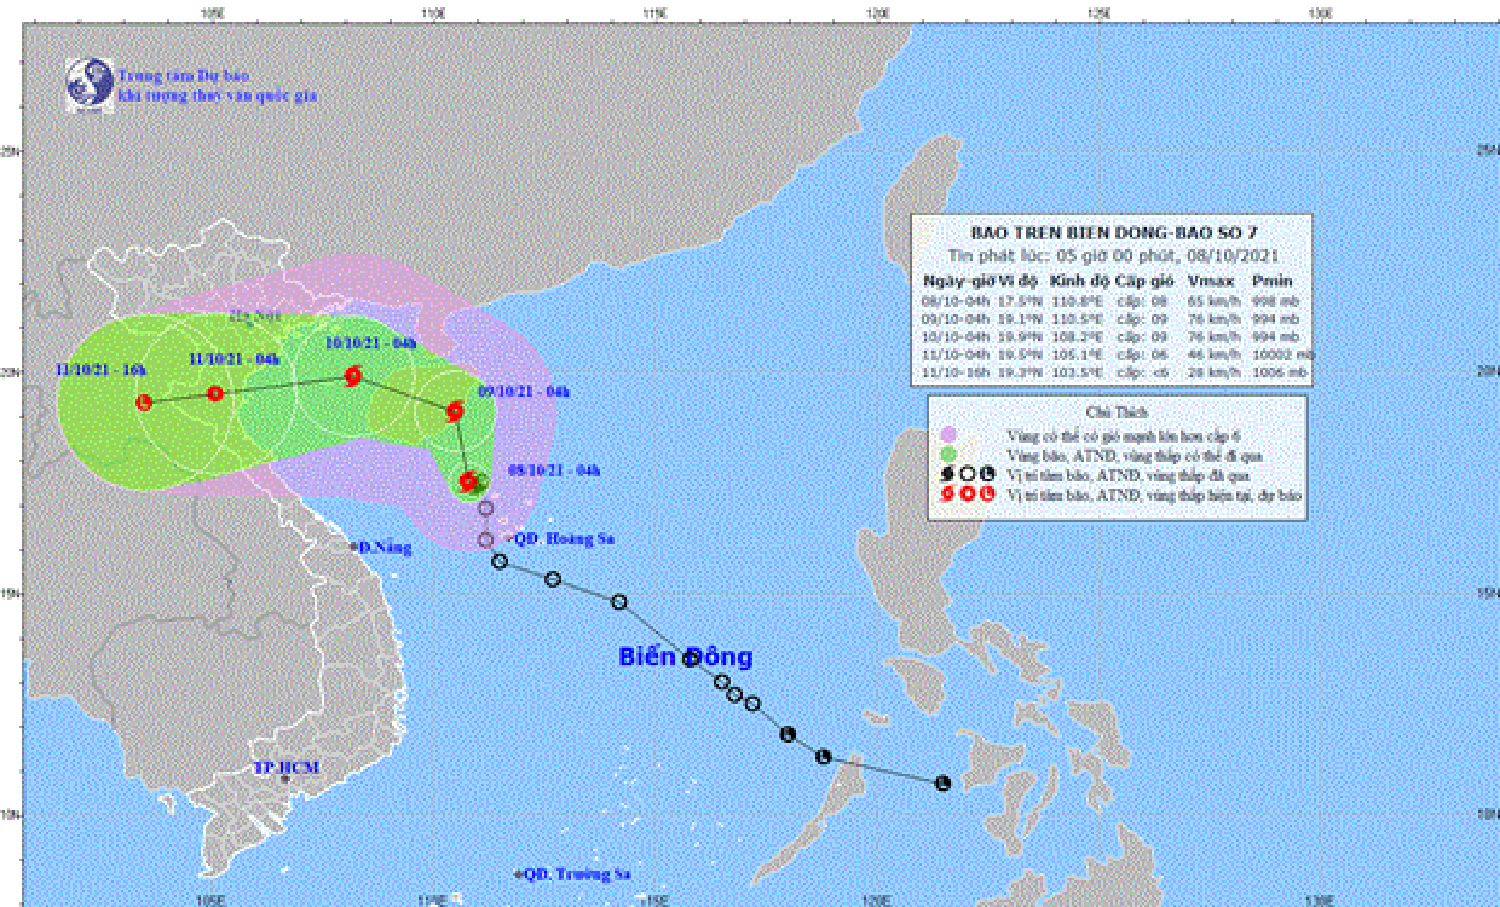 Áp thấp nhiệt đới tại Biển Đông đã mạnh lên thành bão - cơn bão số 7